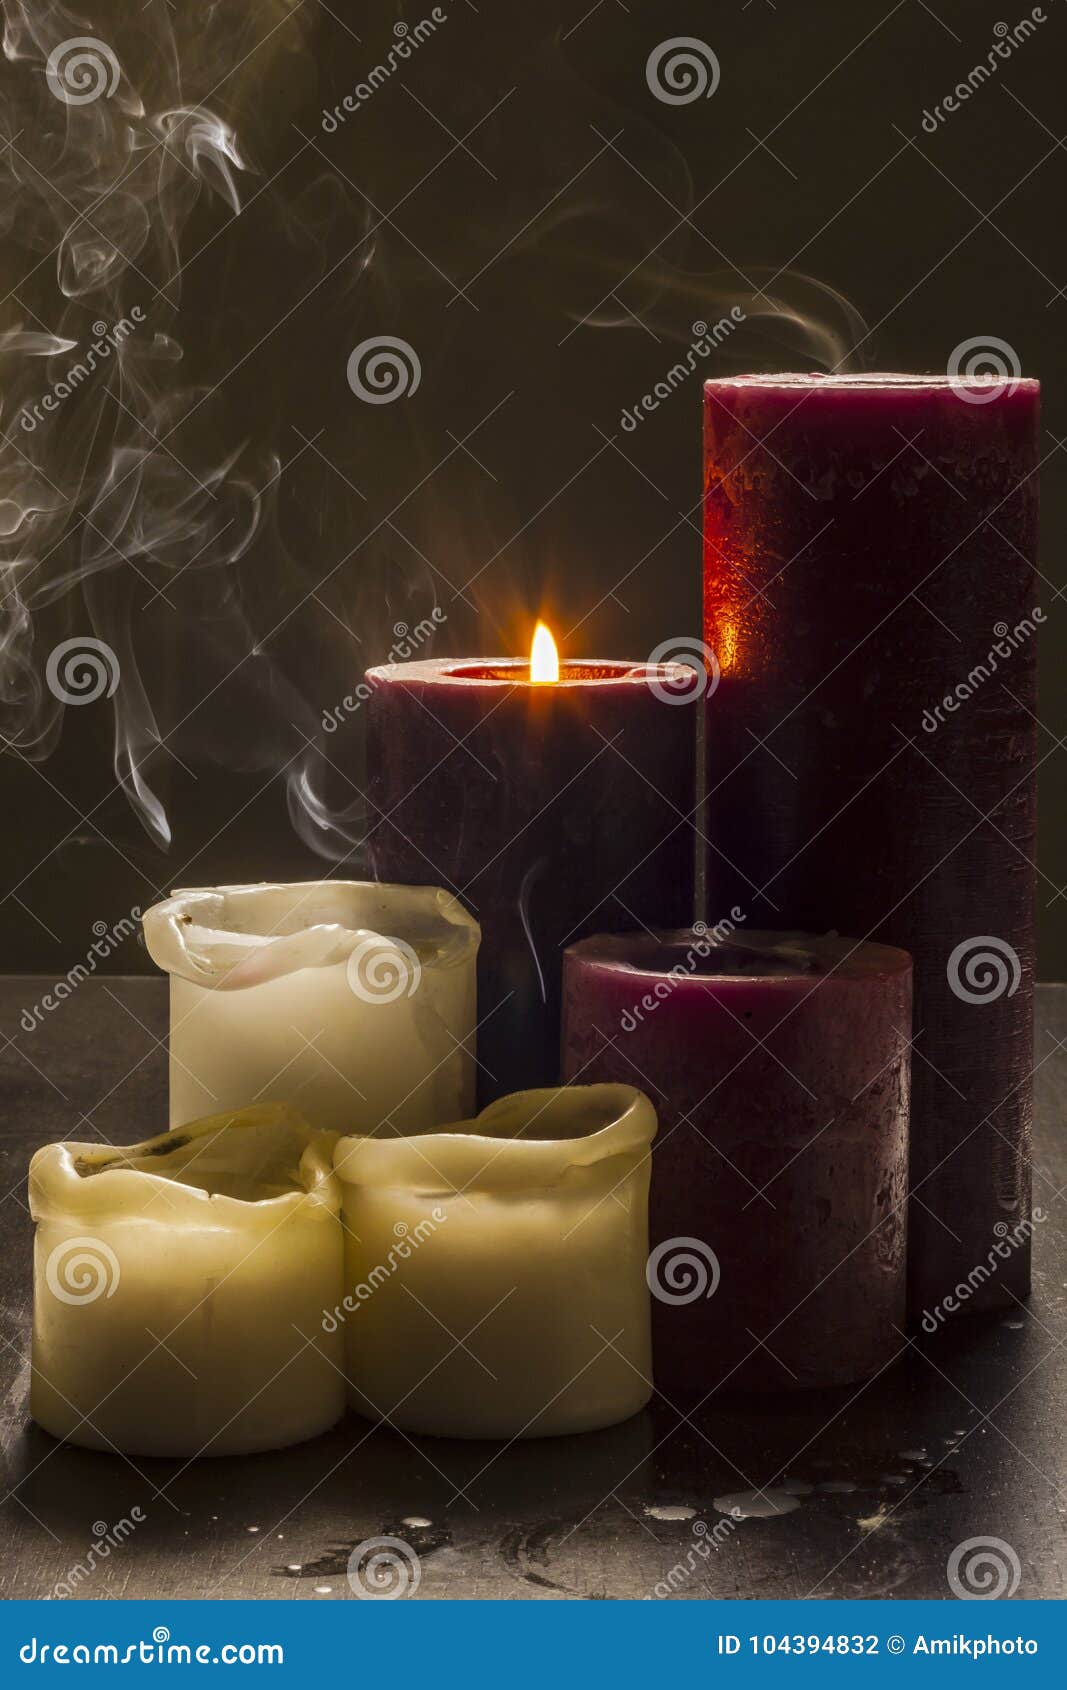 candles and gray smoke